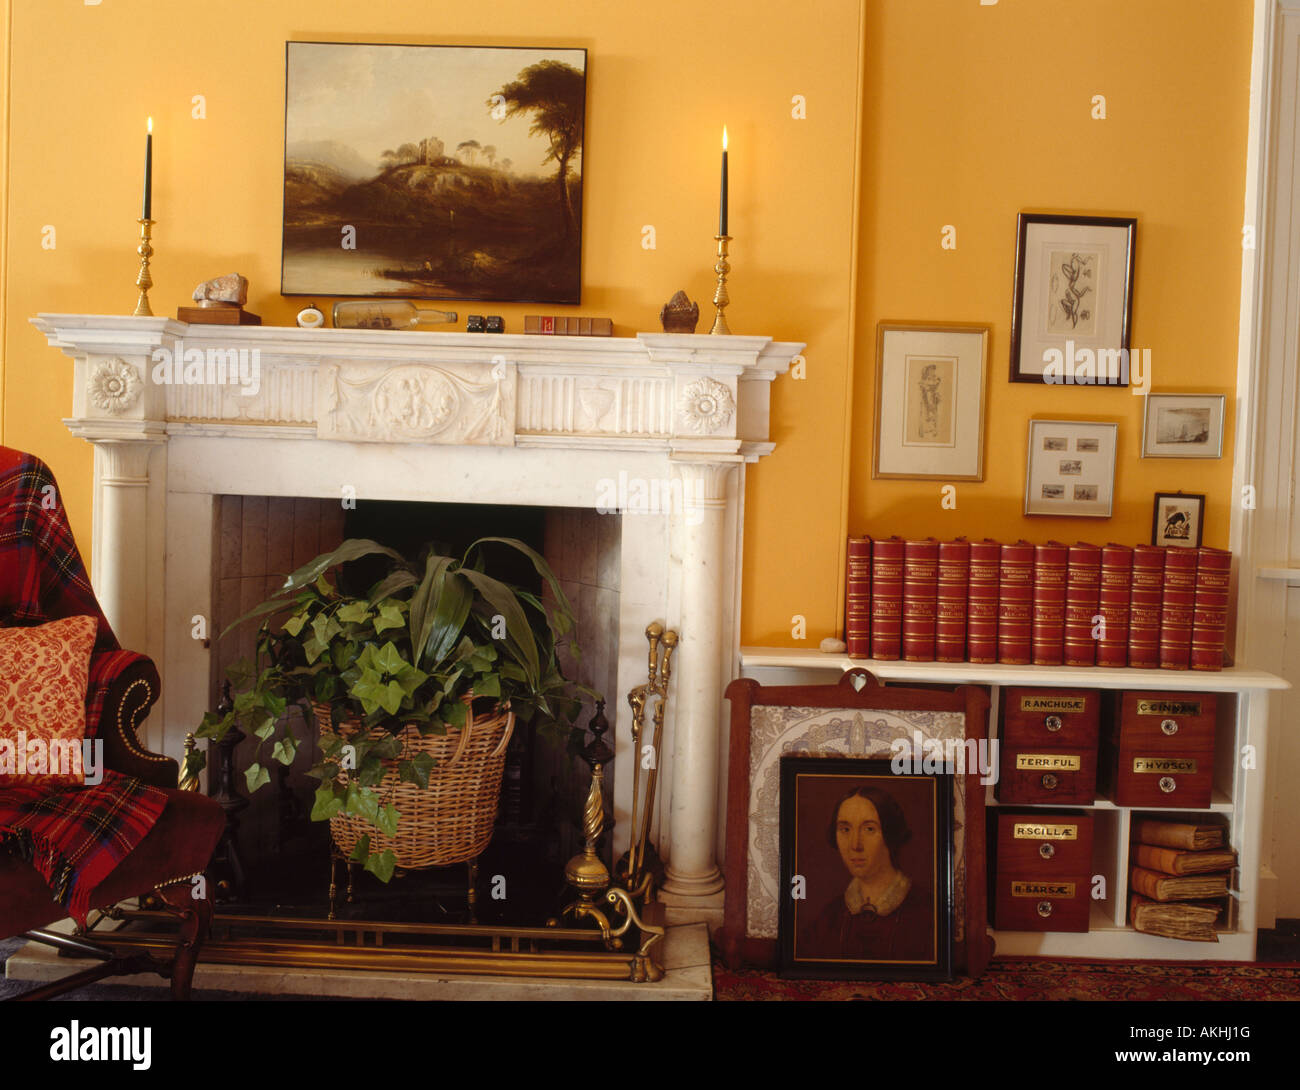 Peinture à l'huile sur mur au-dessus de la cheminée de marbre blanc en jaune salon avec leatherbound livres sur étagères basses Banque D'Images